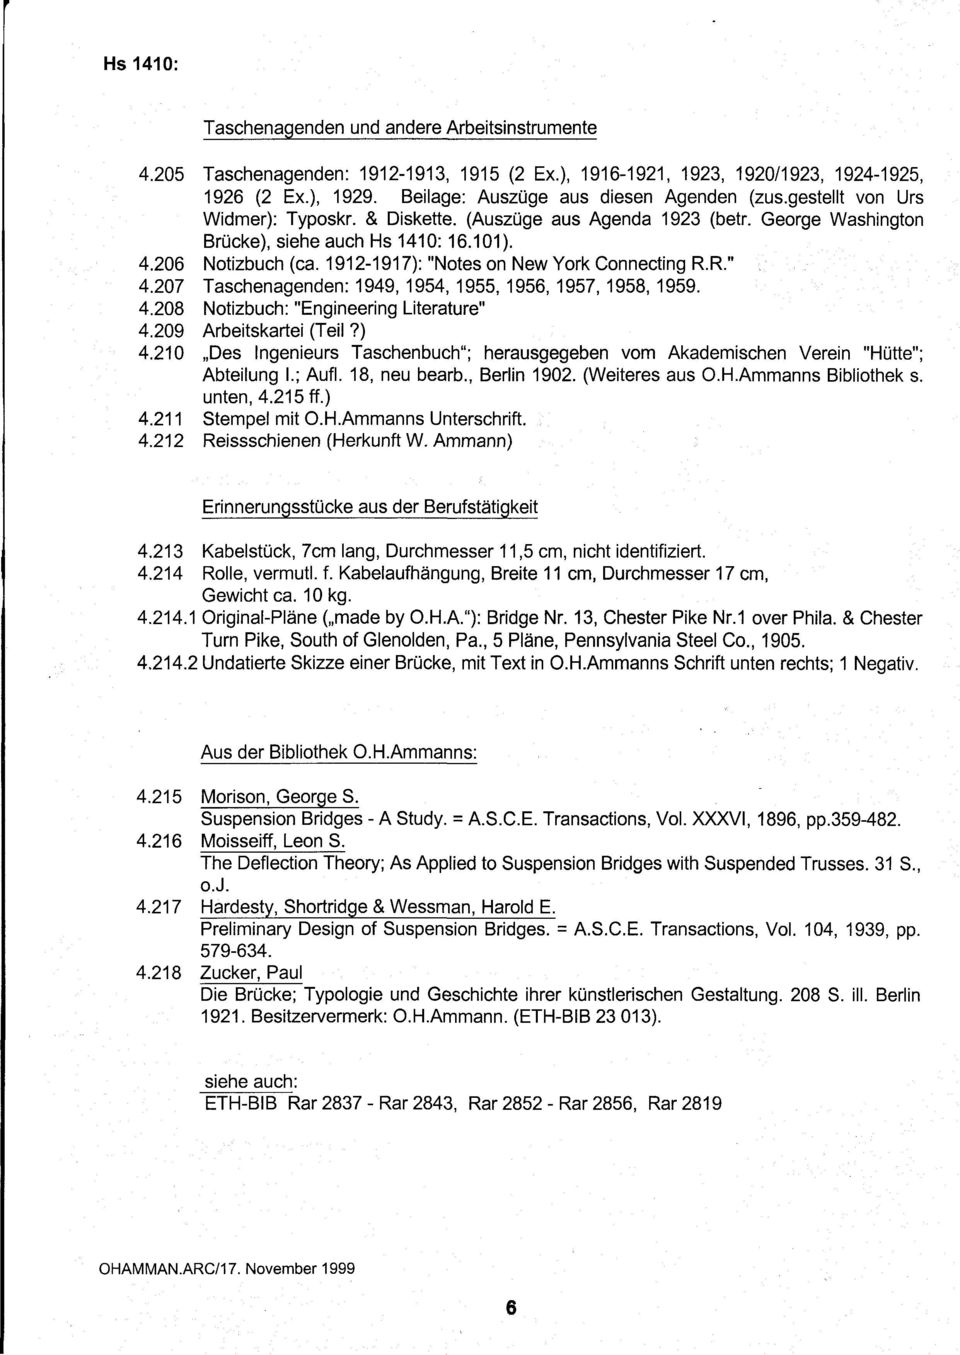 R." 4.207 Taschenagenden: 1949, 1954, 1955, 1956, 1957, 1958, 1959. 4.208 Notizbuch: "Engineering Literature" 4.209 Arbeitskartei (Teil?) 4.